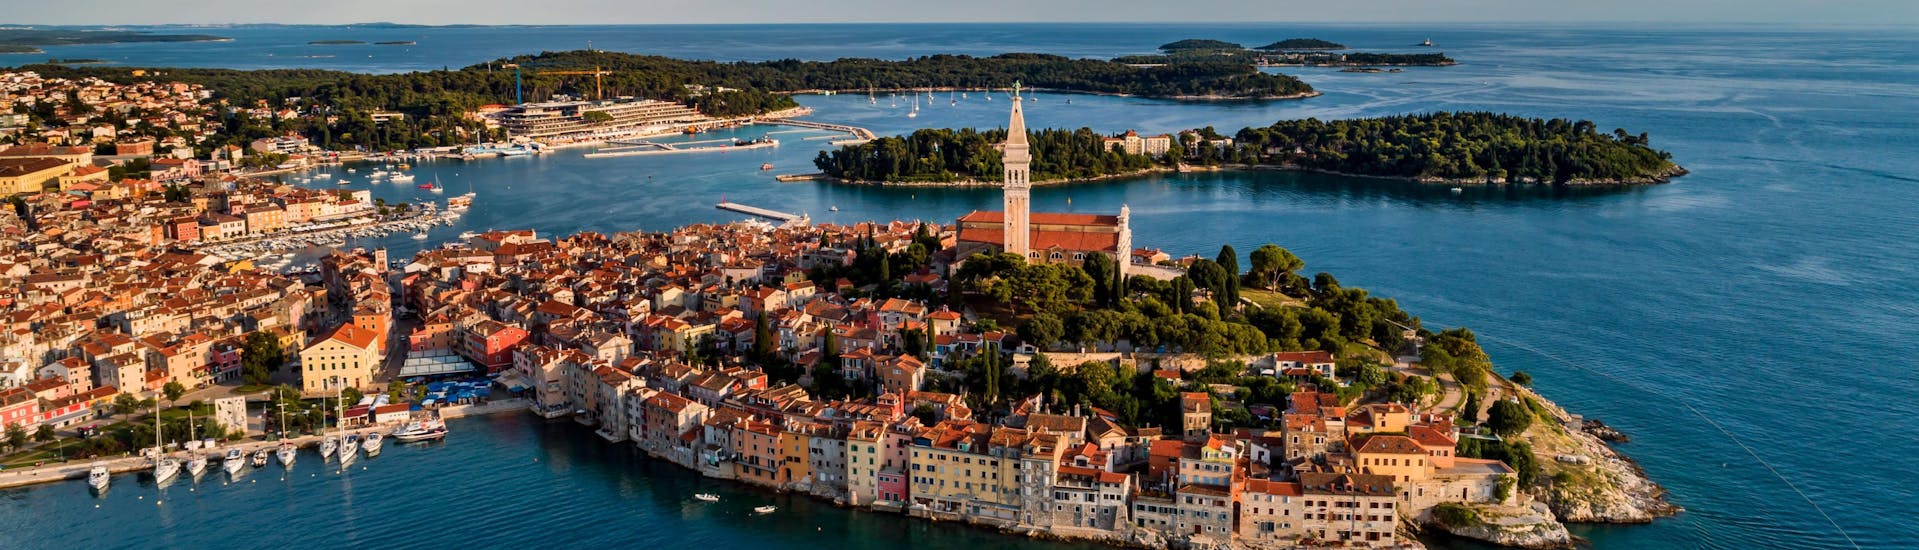 Bovenaanzicht van Rovinj, een mooie stad in Istrië, Kroatië. 